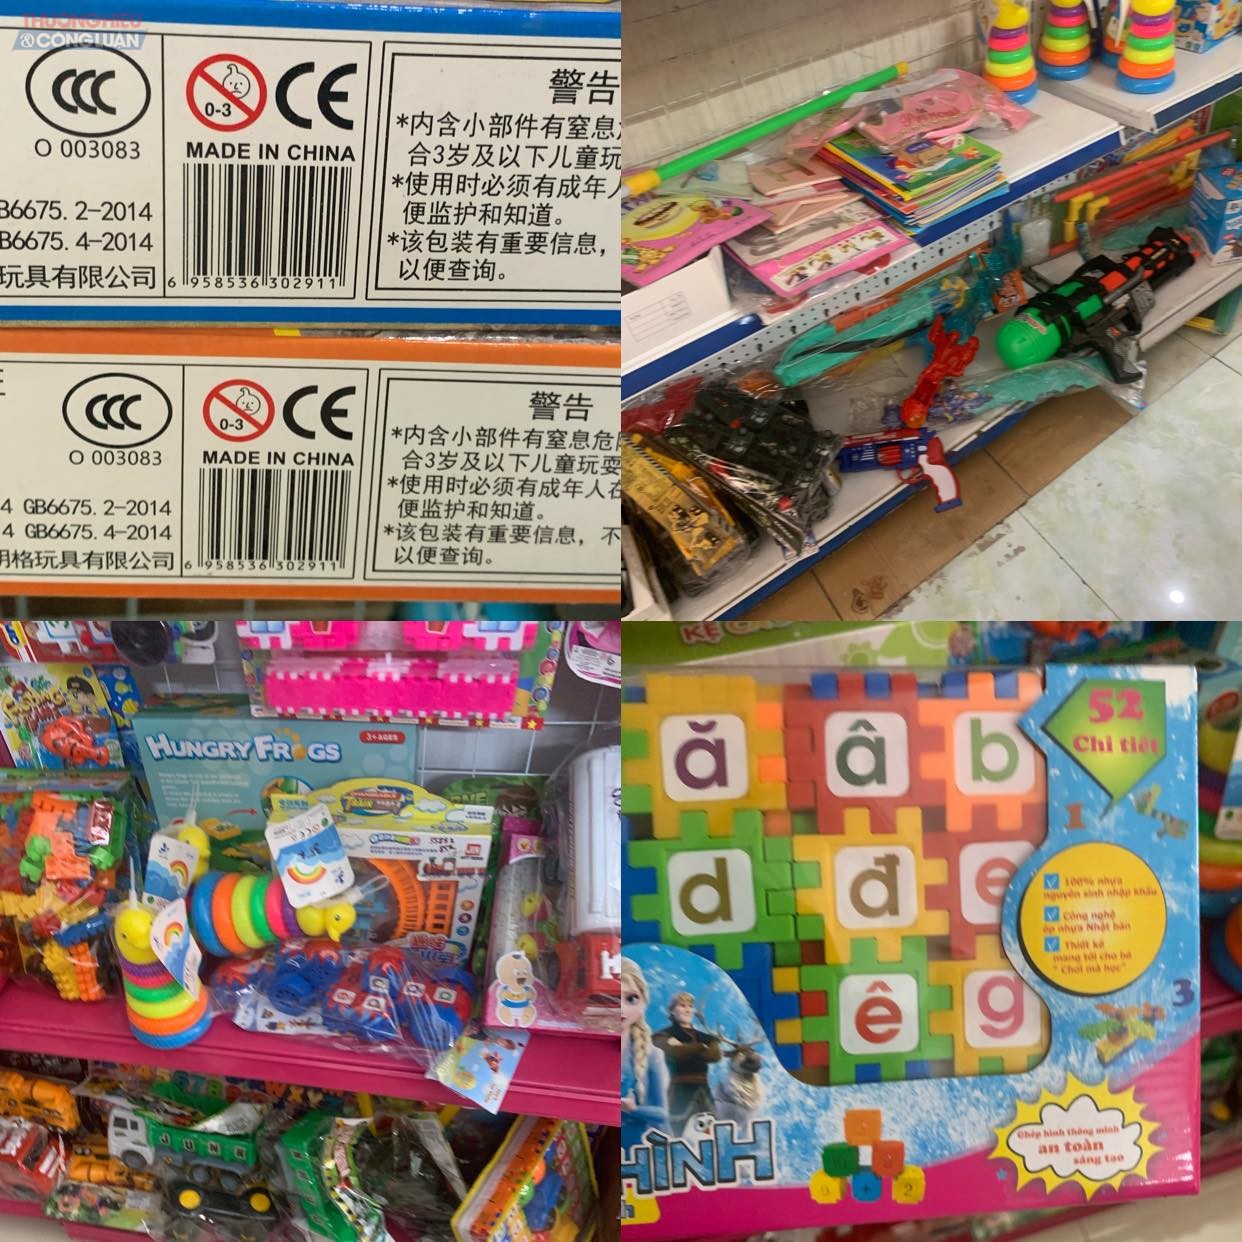 các gian hàng bán sản phẩm là đồ chơi trẻ em, có rất nhiều sản phẩm với nhiều mẫu mã, kiểu dáng khác nhau